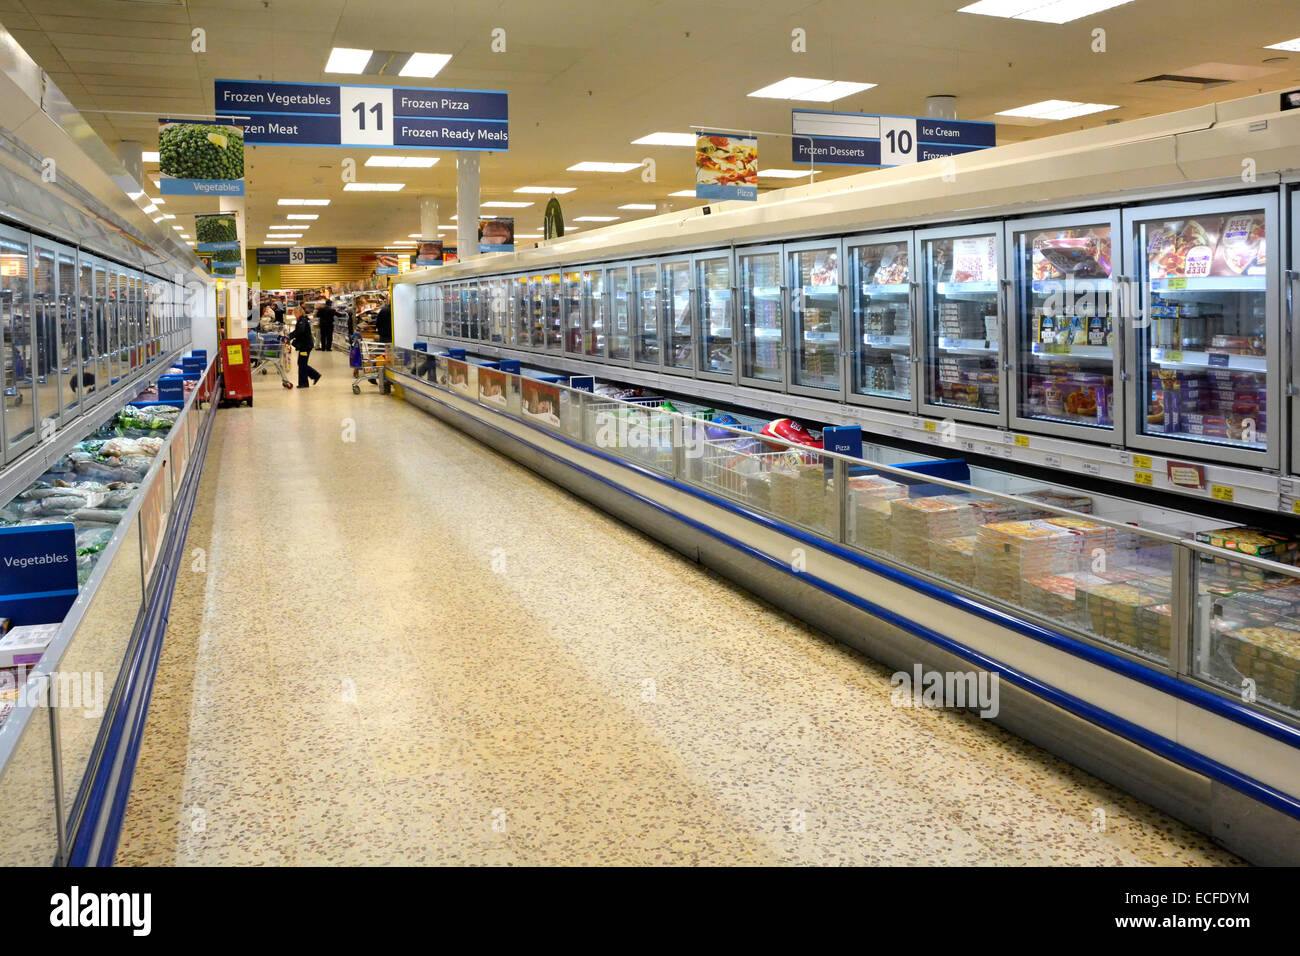 Einkaufs- und Innenansicht Tesco-Supermarkt, Tiefkühlküche und Kühlschränke, Einkaufsmöglichkeiten im Innenbereich mit Terrazzo-Boden, East London, England, Großbritannien Stockfoto